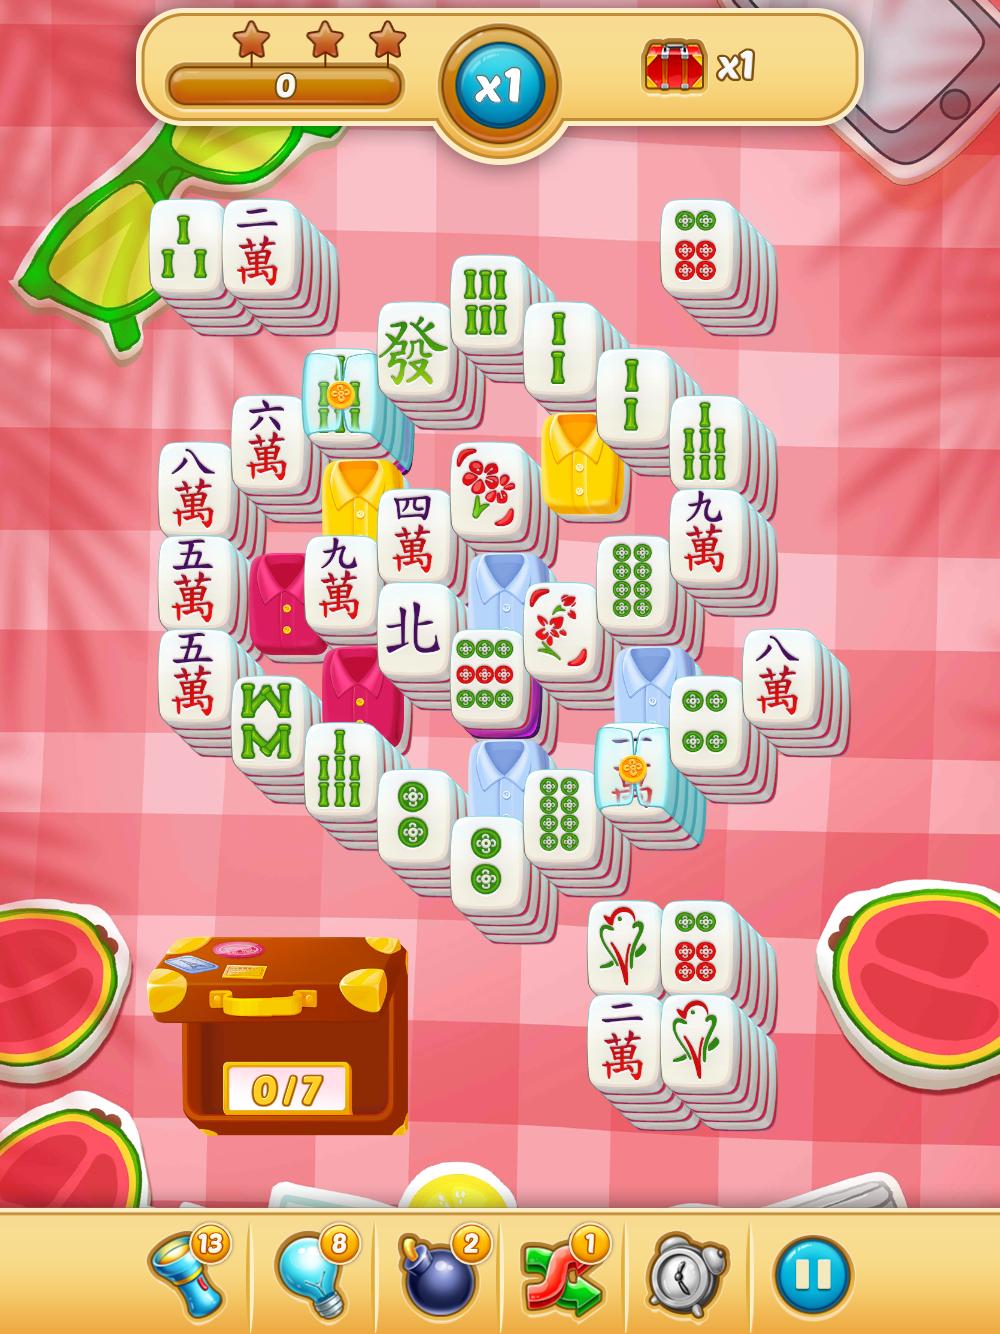 Mahjong City Tours Free Mahjong Classic Game 40.1.0 Screenshot 24